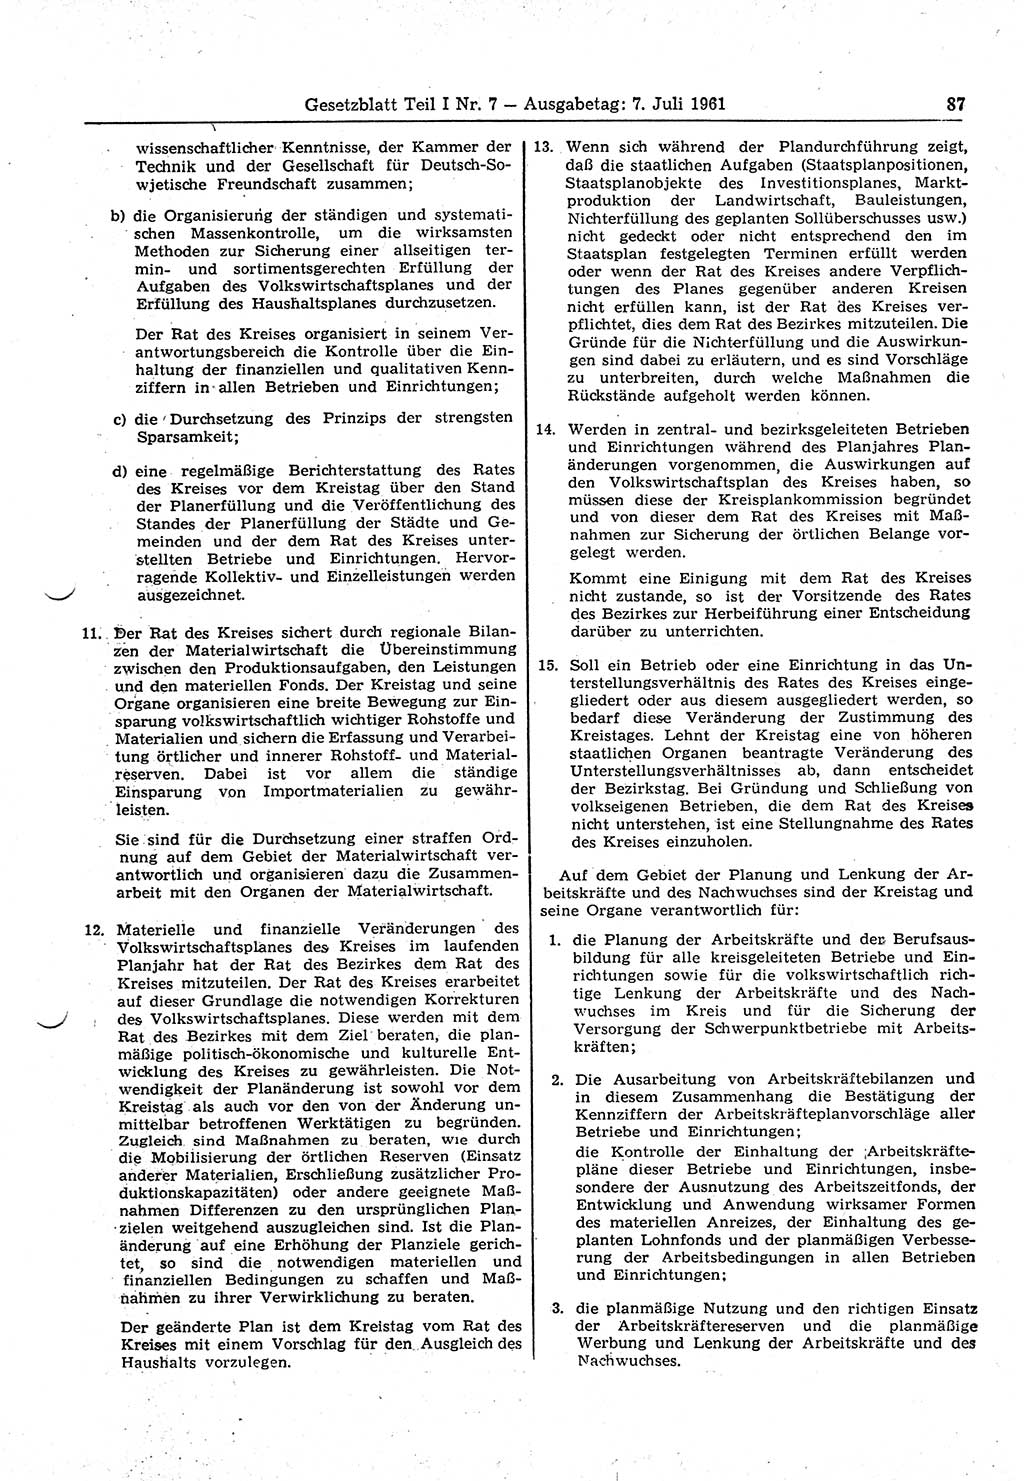 Gesetzblatt (GBl.) der Deutschen Demokratischen Republik (DDR) Teil Ⅰ 1961, Seite 87 (GBl. DDR Ⅰ 1961, S. 87)